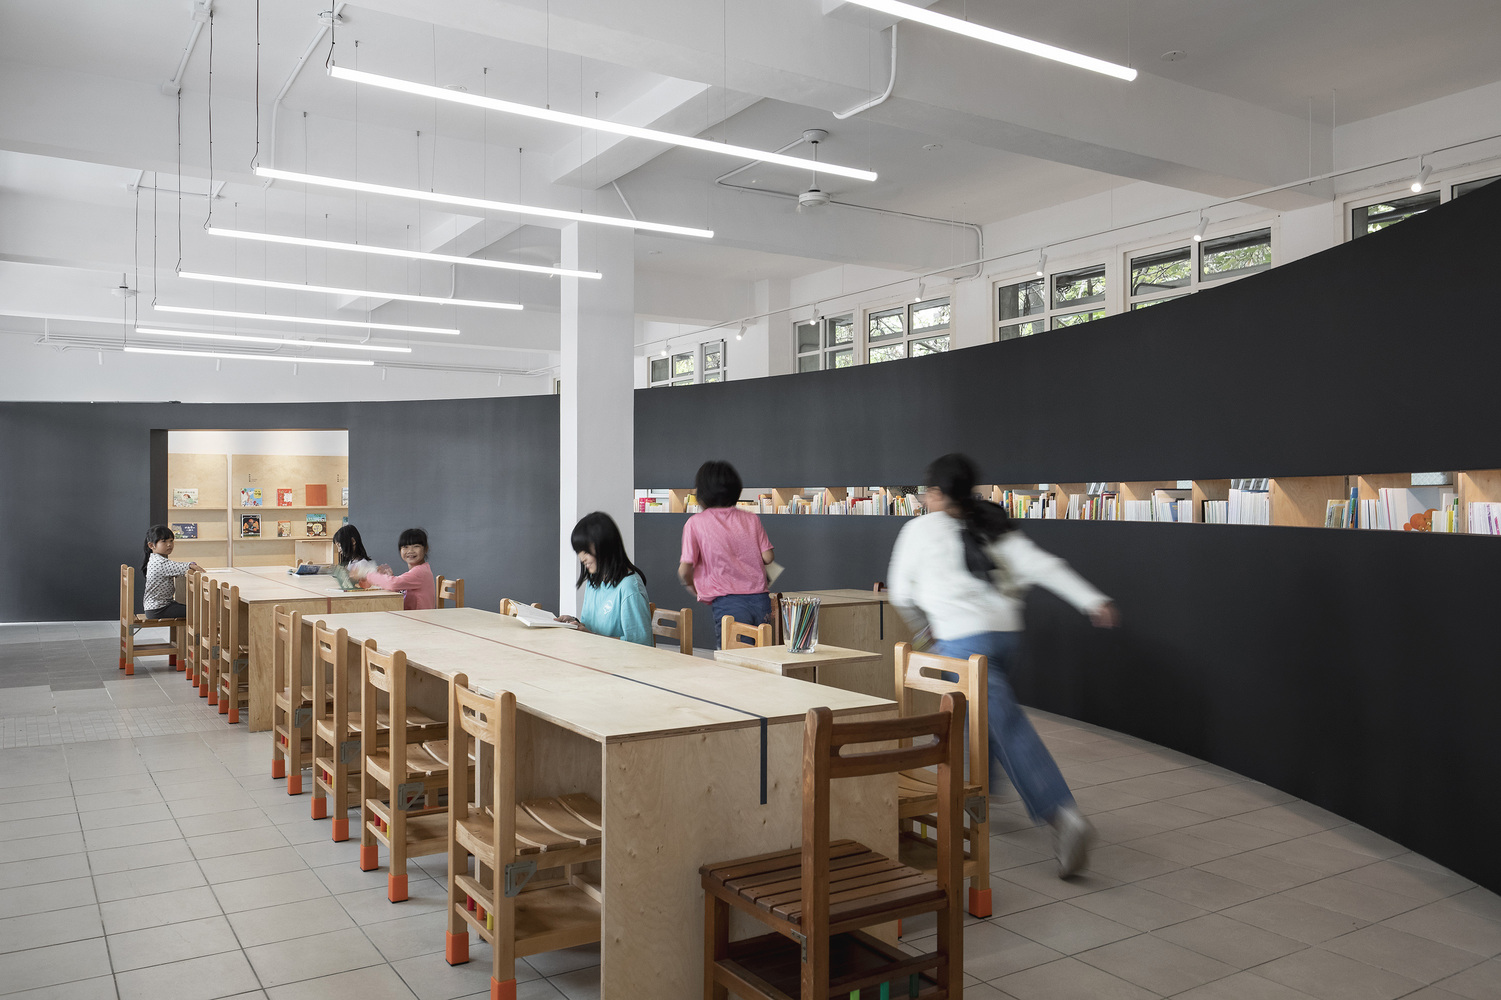 台湾蓝田小学对教室进行改造，将有限的空间最大利用化1.jpg